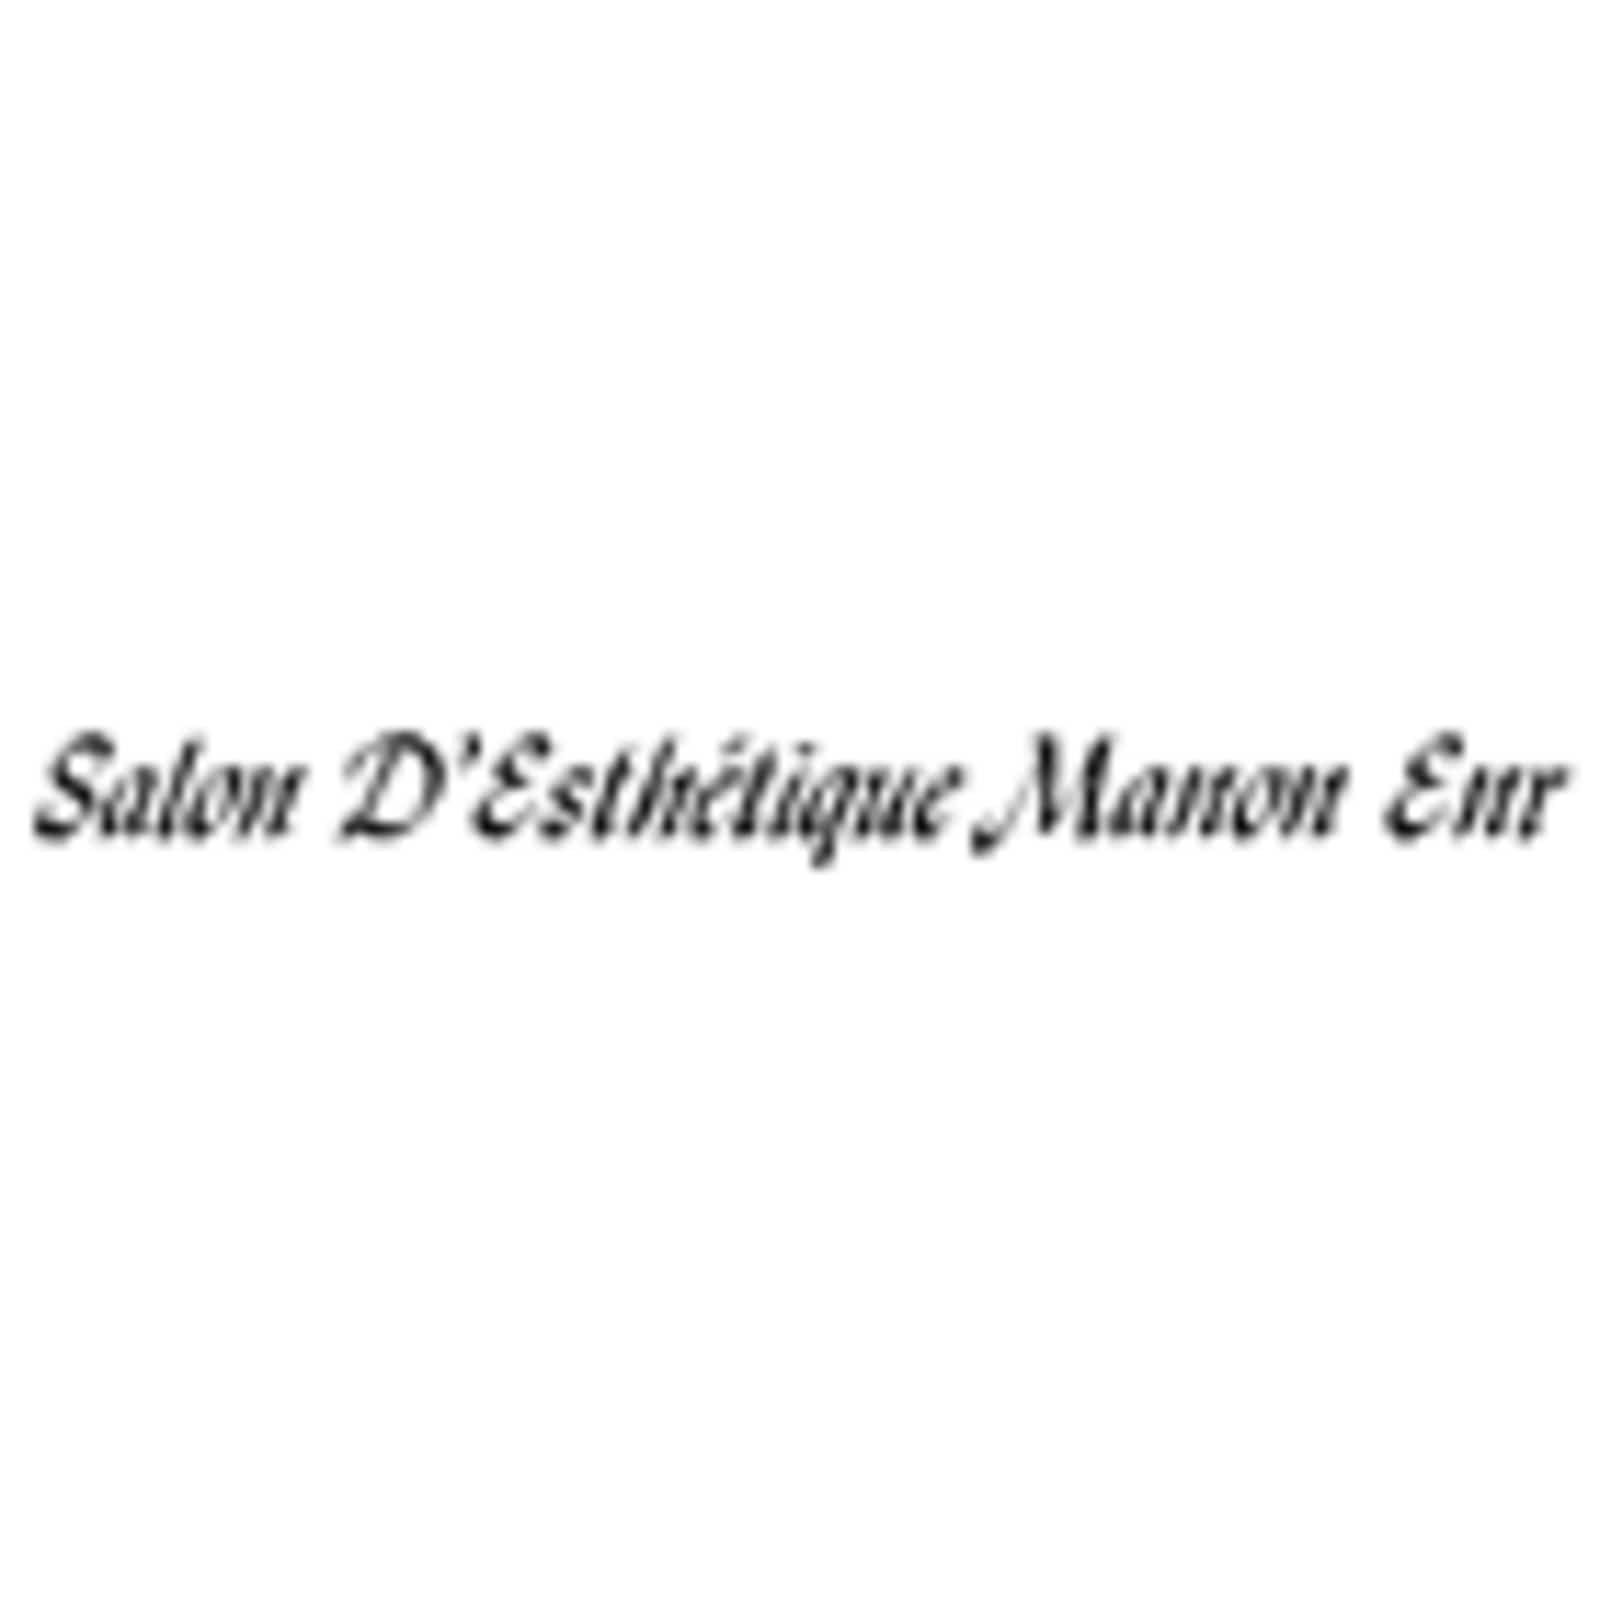 Salon D'Esthetique Manon Enr 130 6 Rue, Ferme-Neuve Quebec J0W 1C0